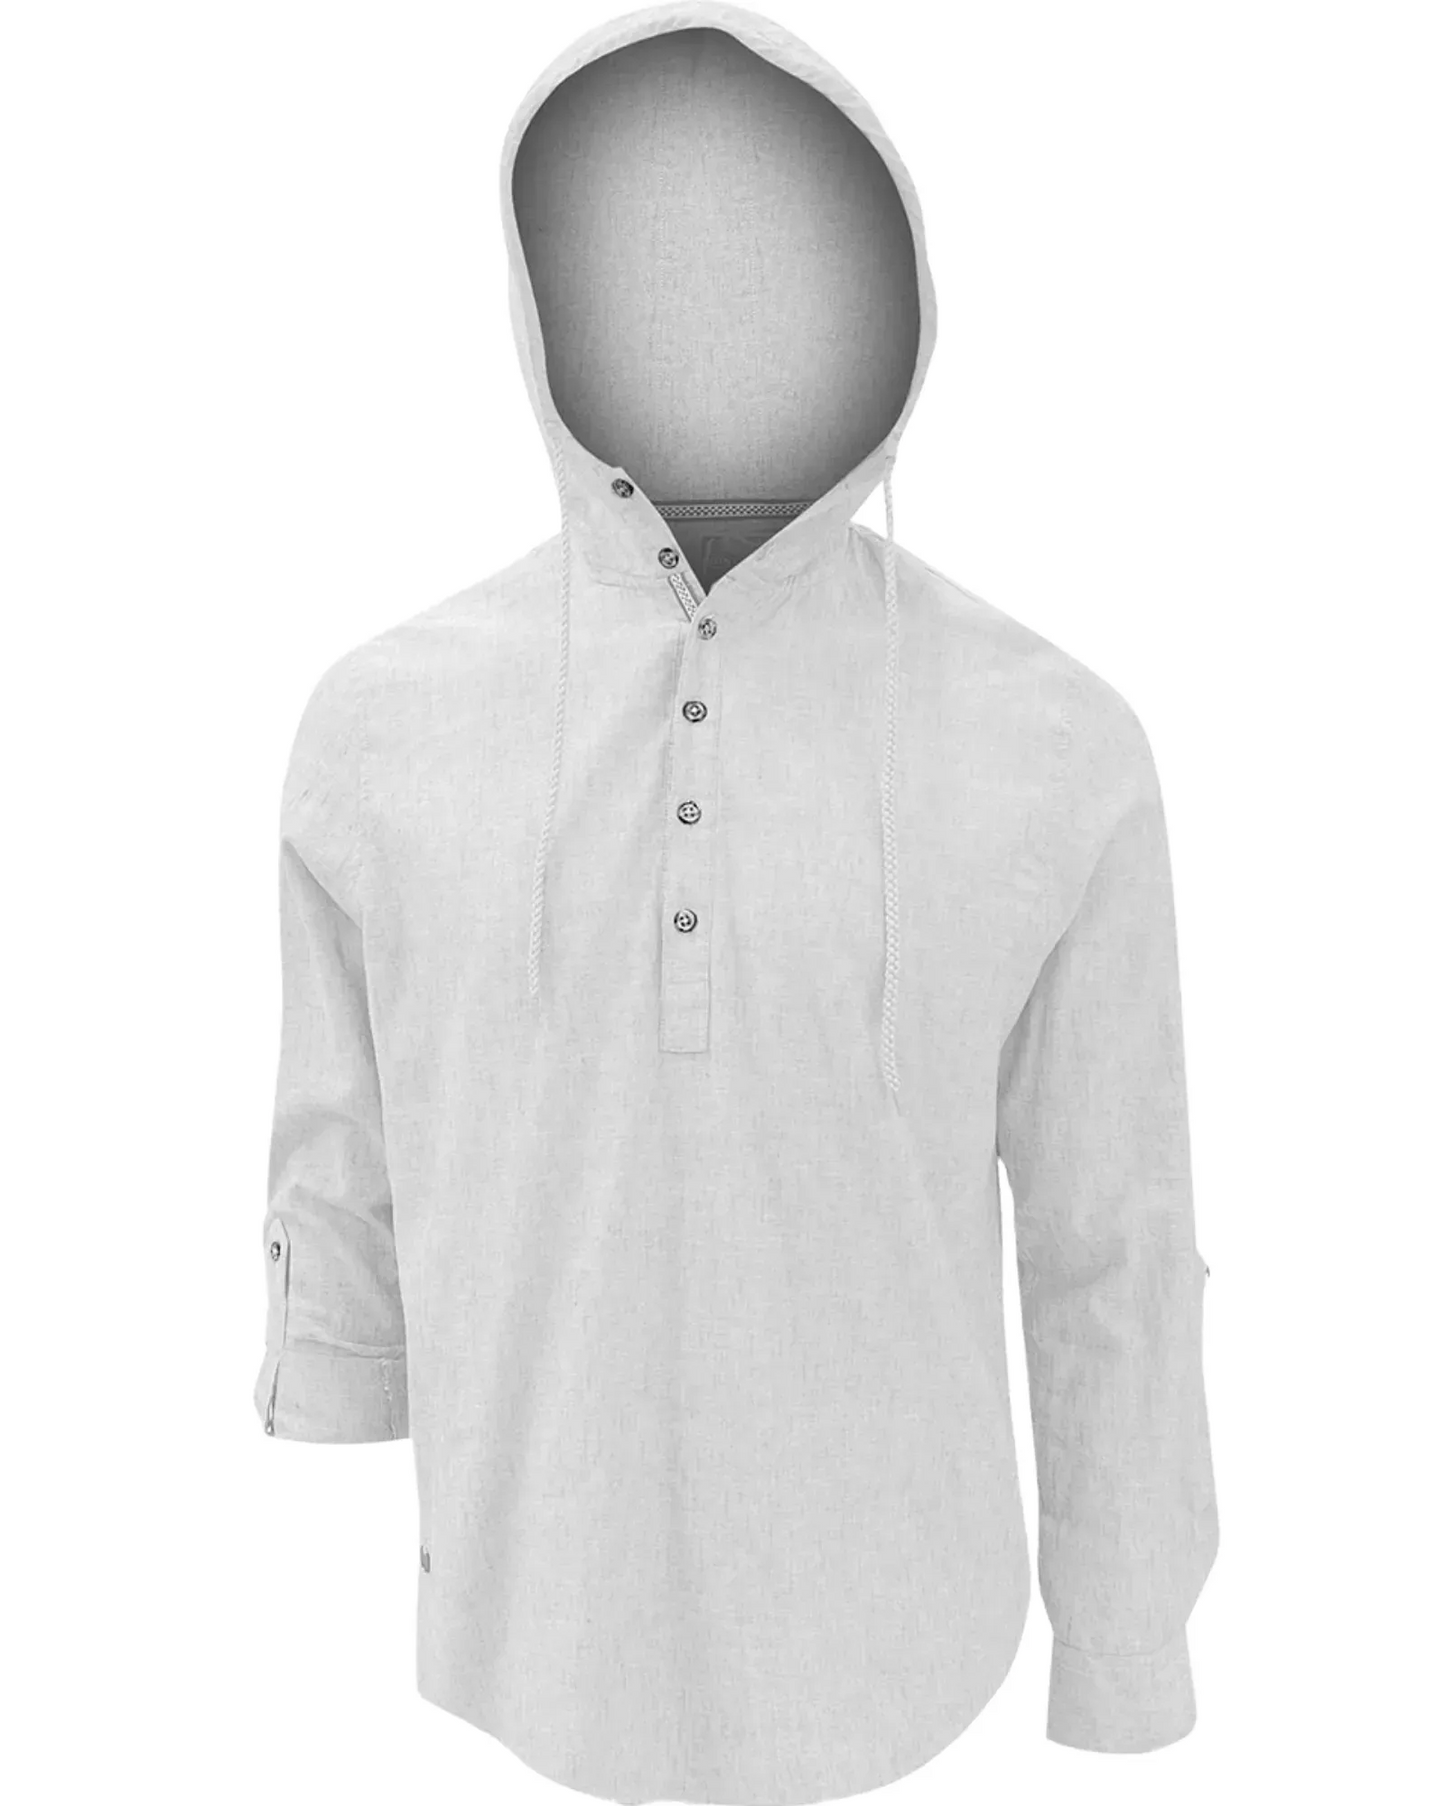 Chemise blanche à capuchon - Point Zéro